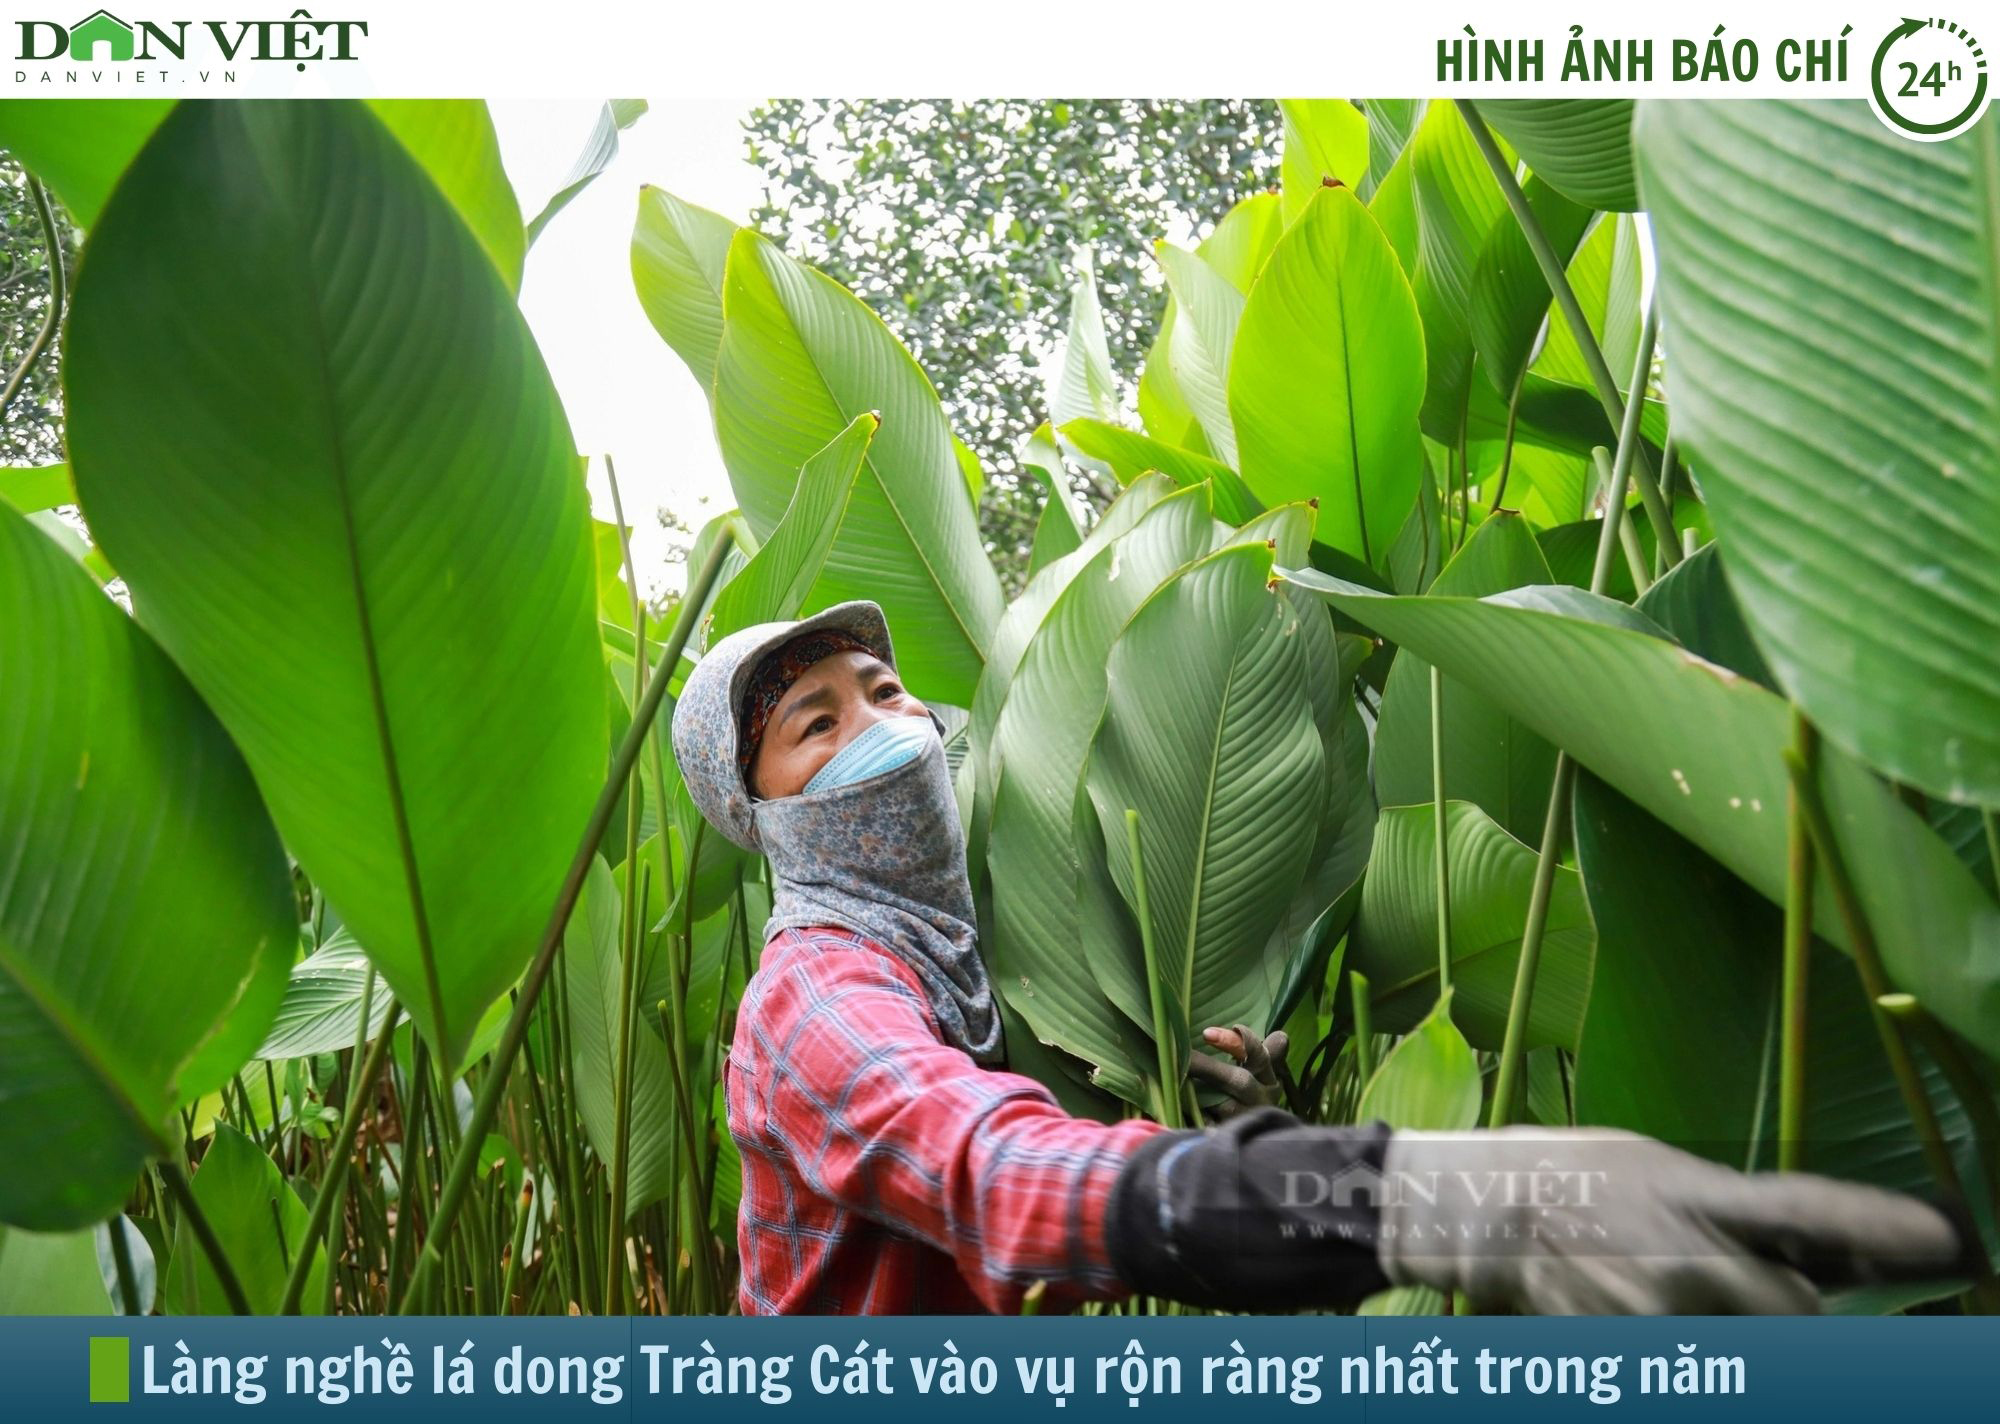 Hình ảnh báo chí 24h: Về ngôi làng trồng lá dong lớn nhất nhì miền Bắc- Ảnh 1.